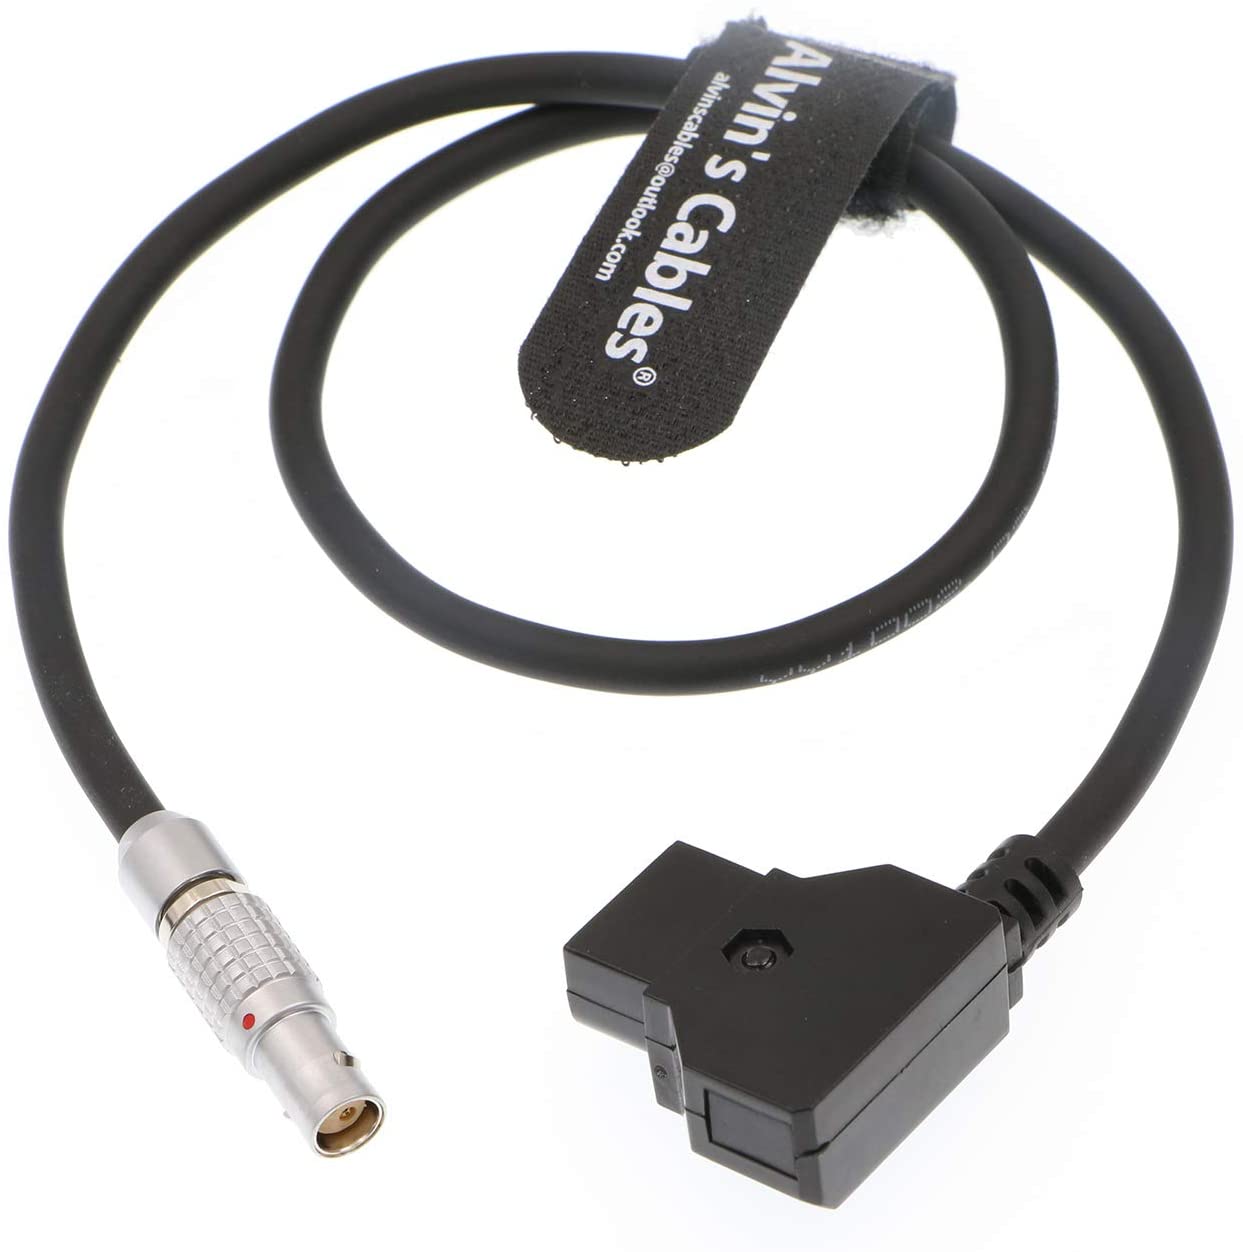 Alvin's Cables 2-polige Buchse auf D-Tap-Stromkabel für rote Komodo-Kamera